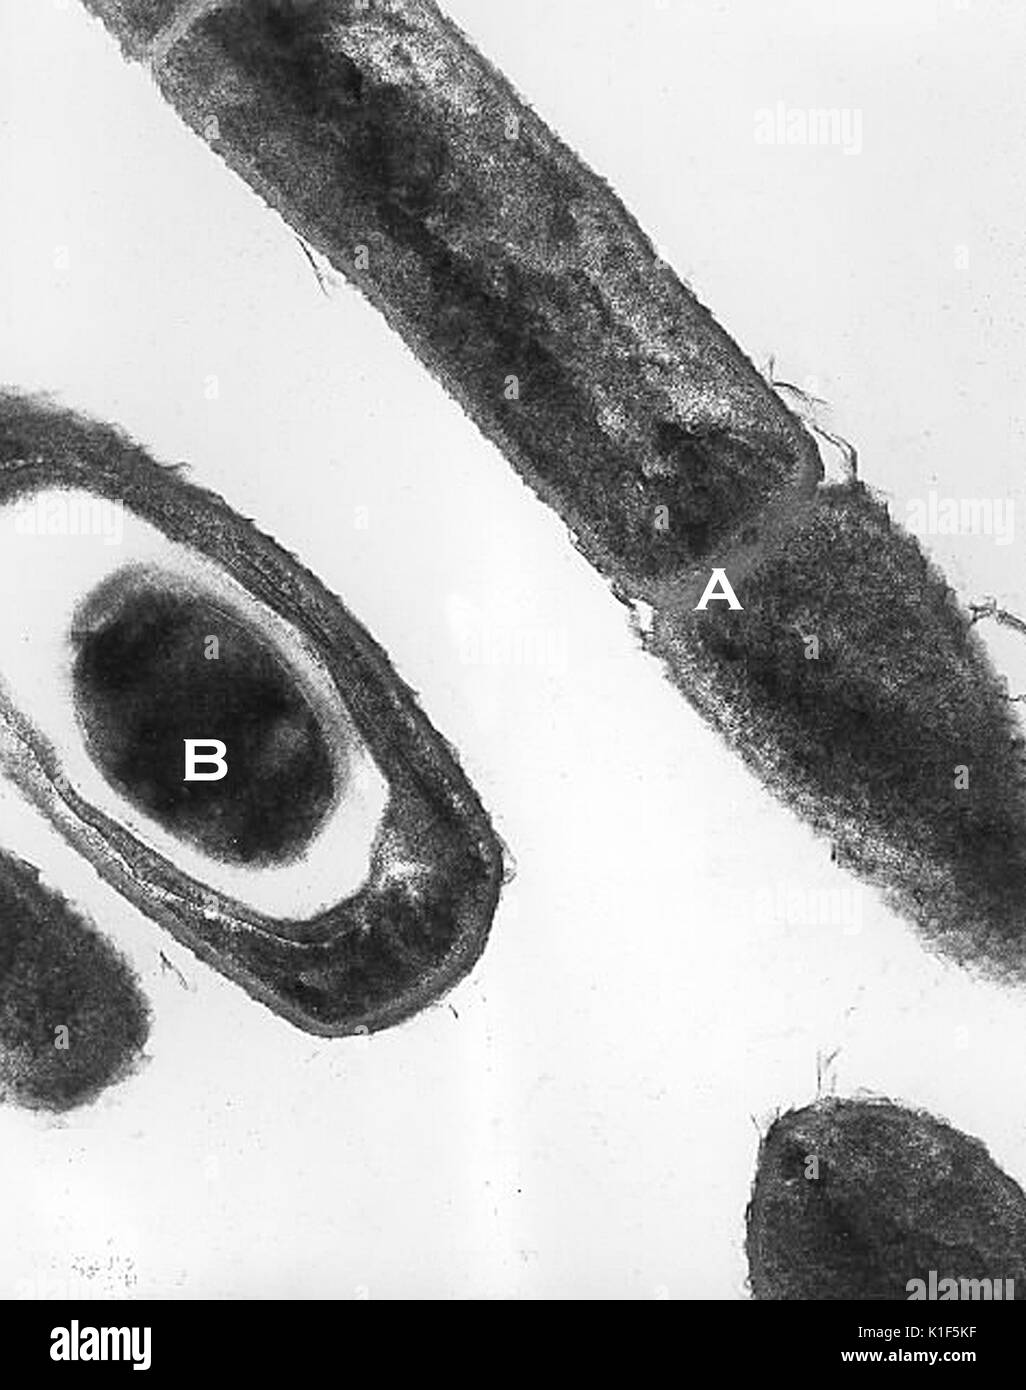 Micrographe de Bacillus anthracis . Micrographie électronique en transmission de Bacillus anthracis à partir de l'image d'une culture de l'anthrax, montrant la division cellulaire (A), et les spores (B). Image courtoisie CDC/Dr. Sherif Zaki, Elizabeth White, 2001. Banque D'Images